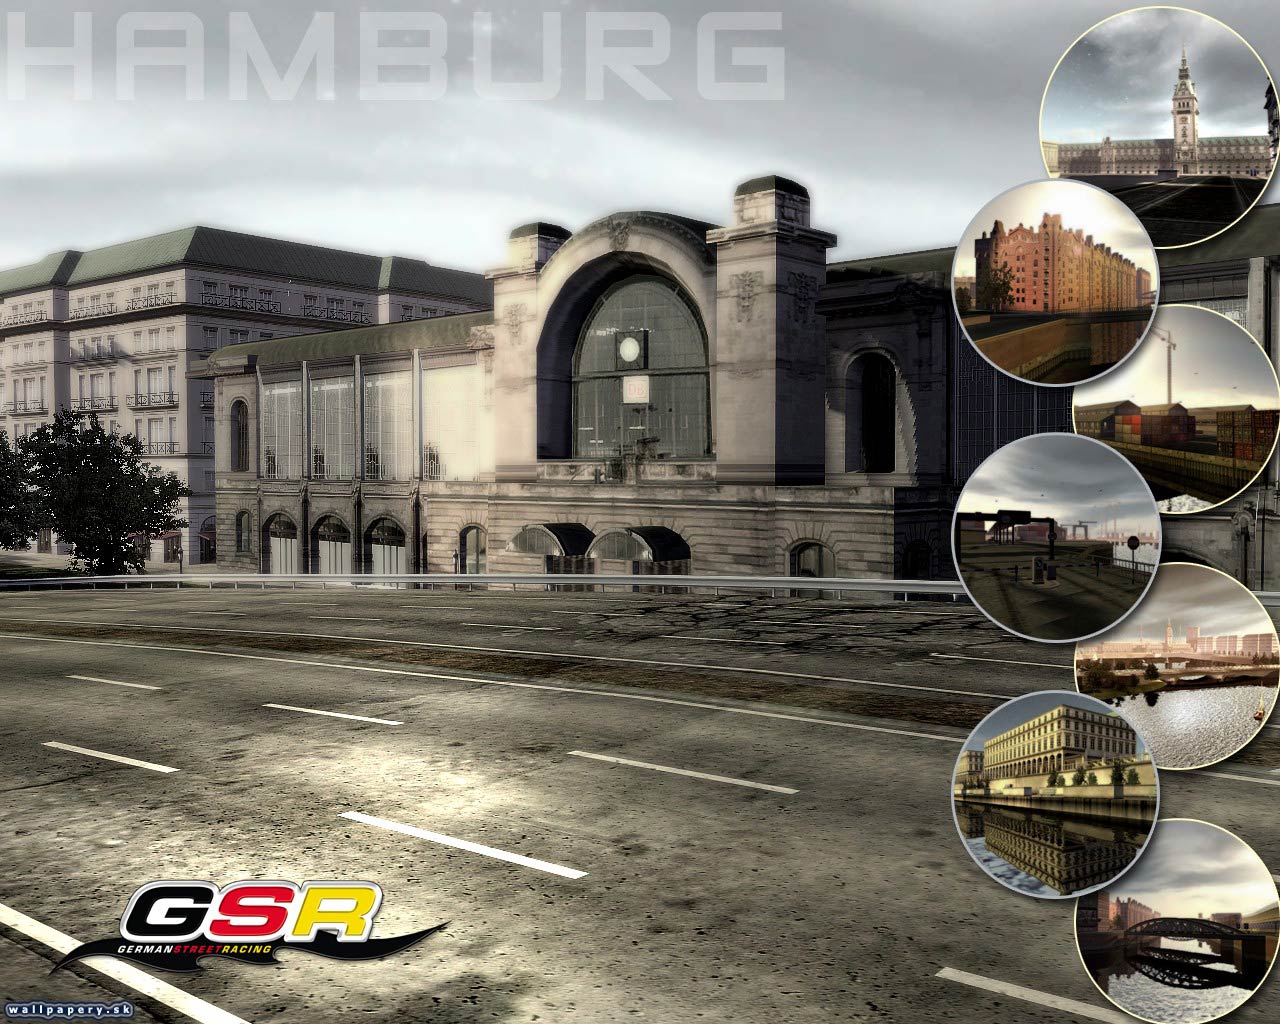 GSR - German Street Racing - wallpaper 12